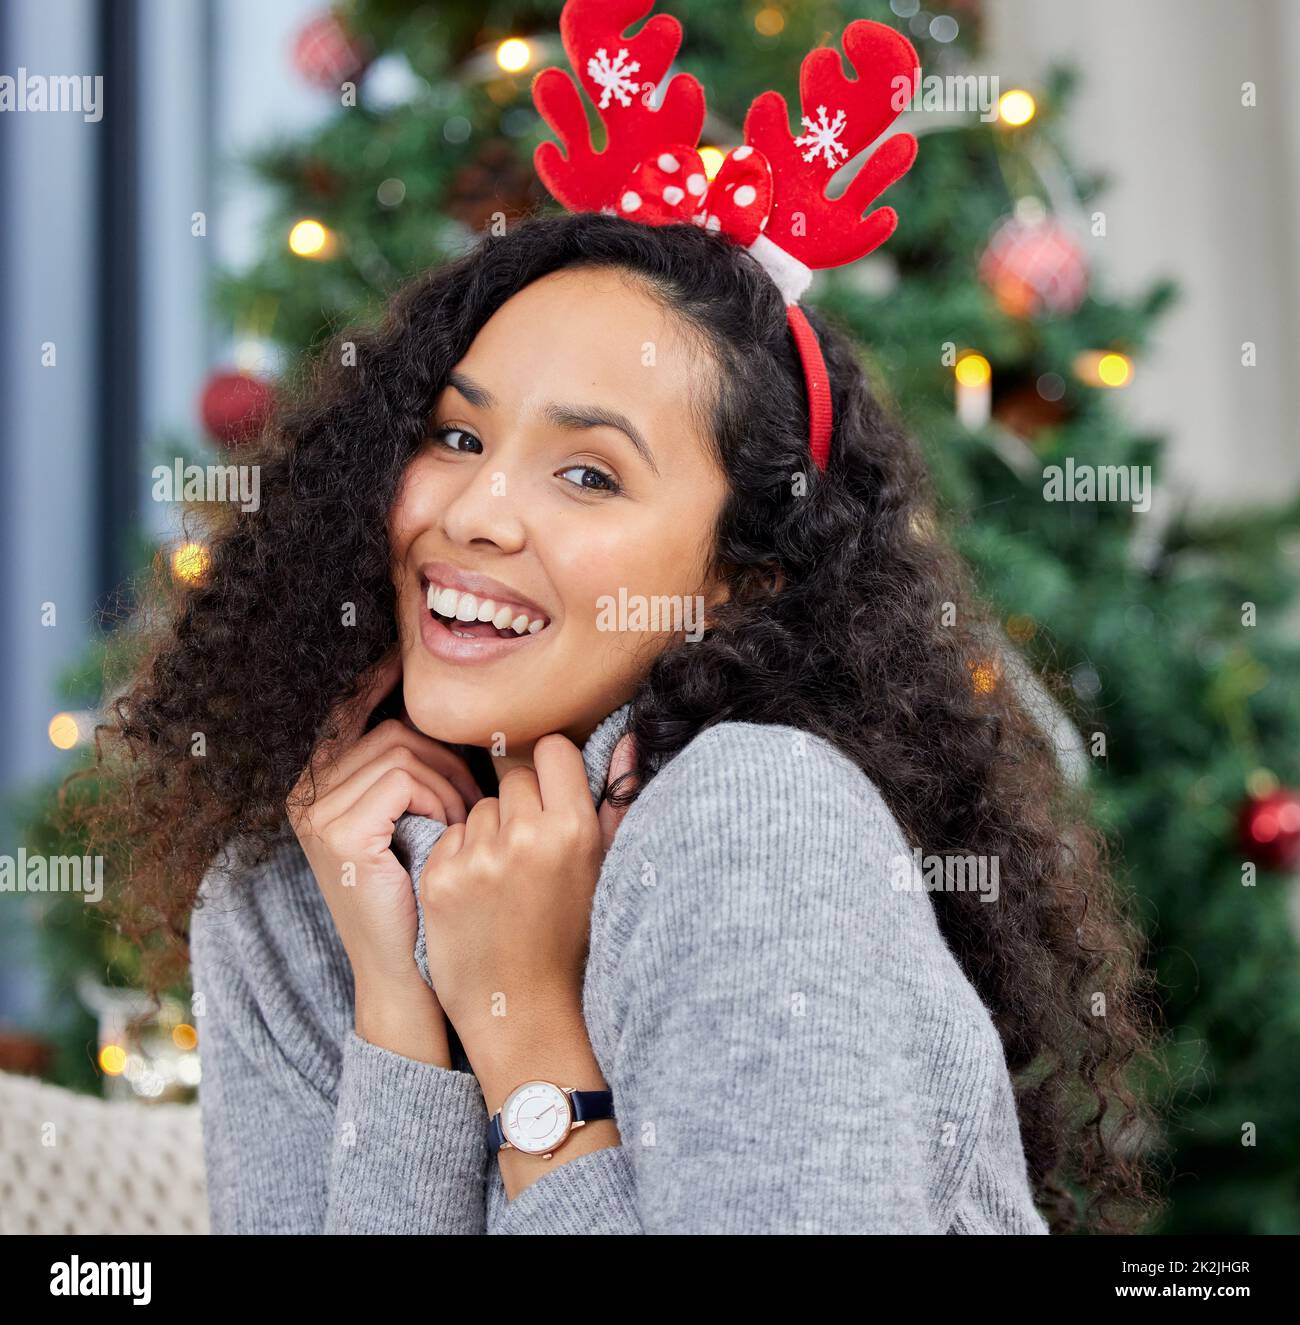 Bequem zu Weihnachten. Aufnahme einer jungen Frau, die zu Hause Weihnachten feiert. Stockfoto